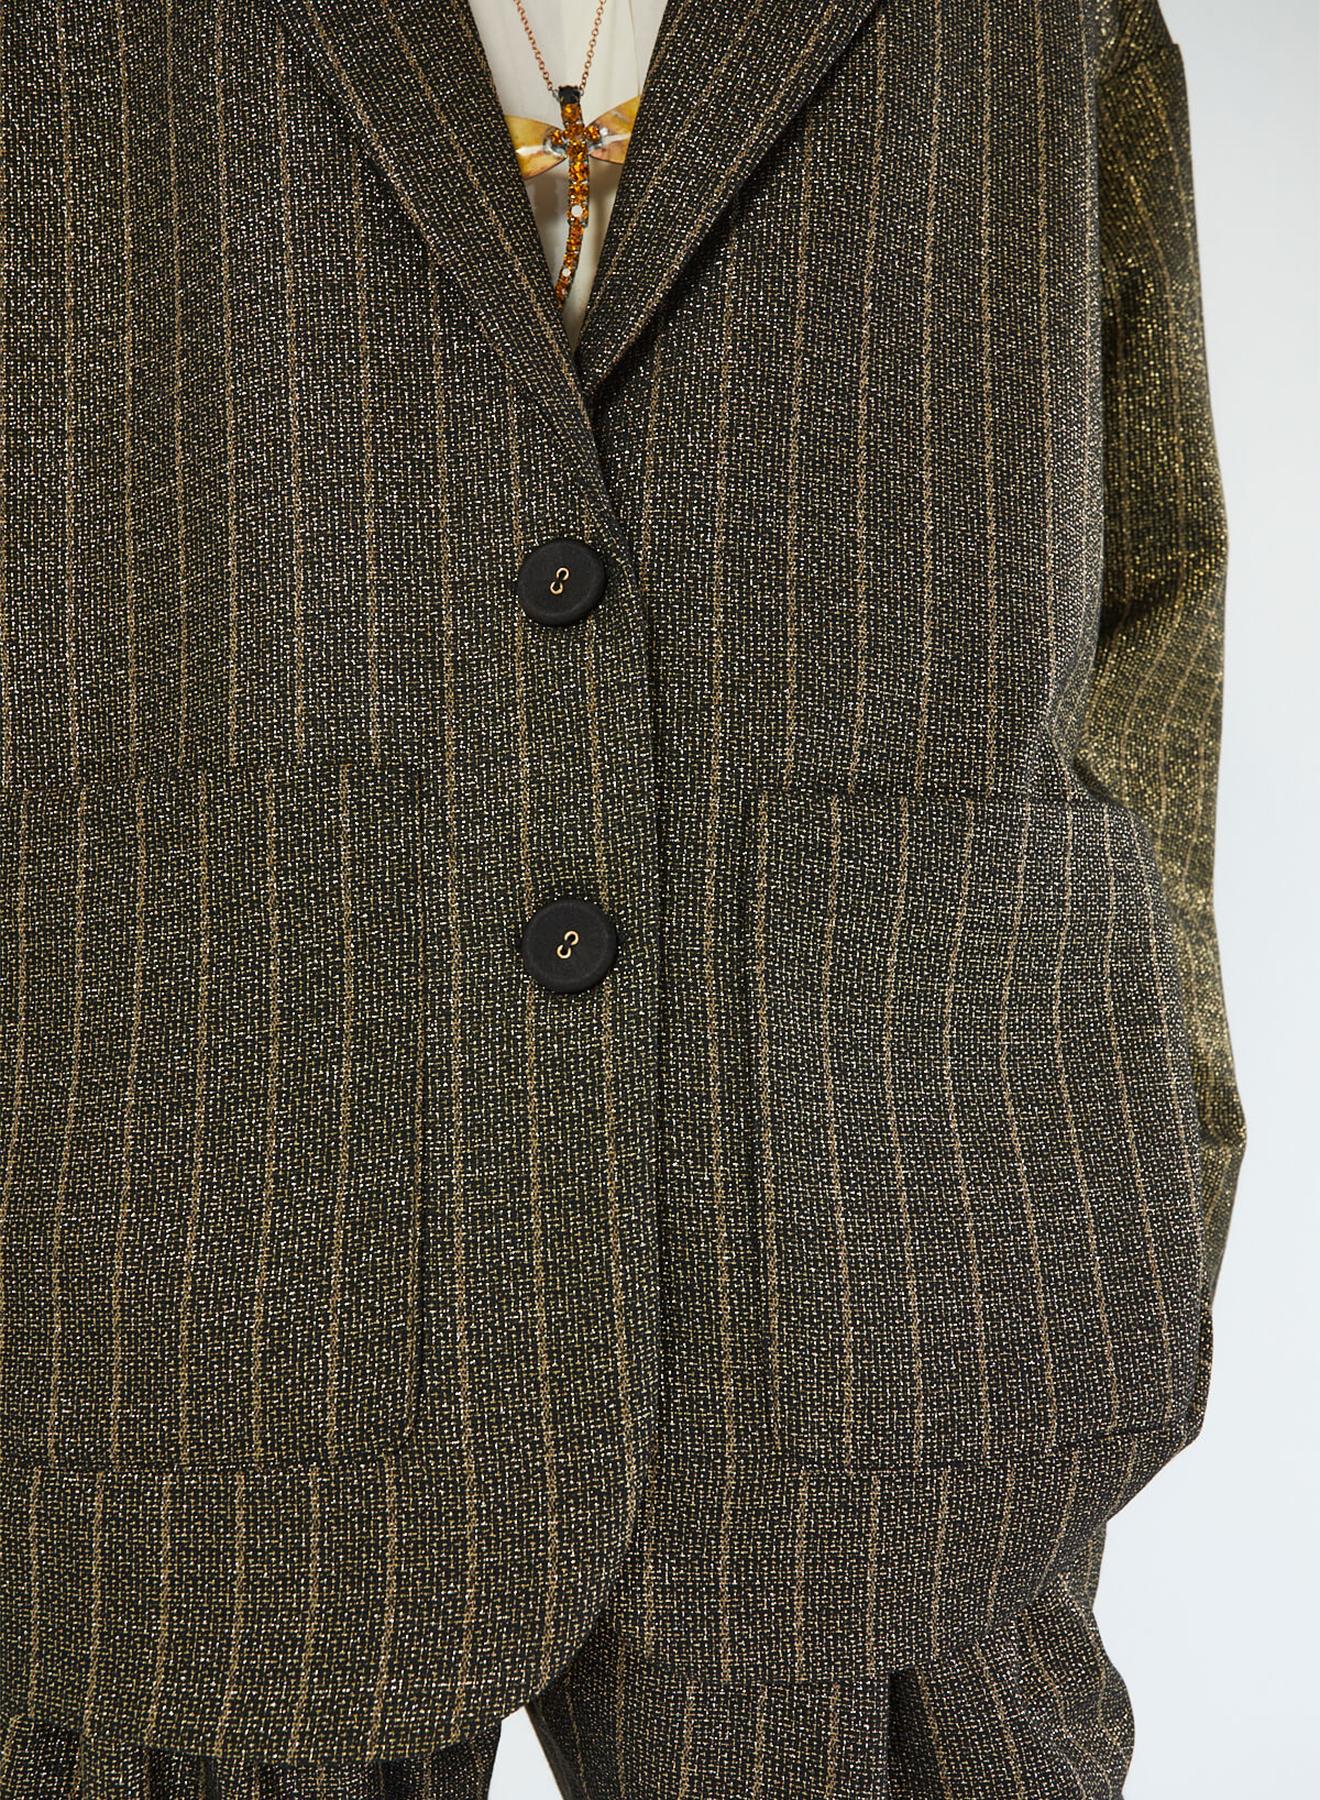 Oversized blazer with stripes - 3